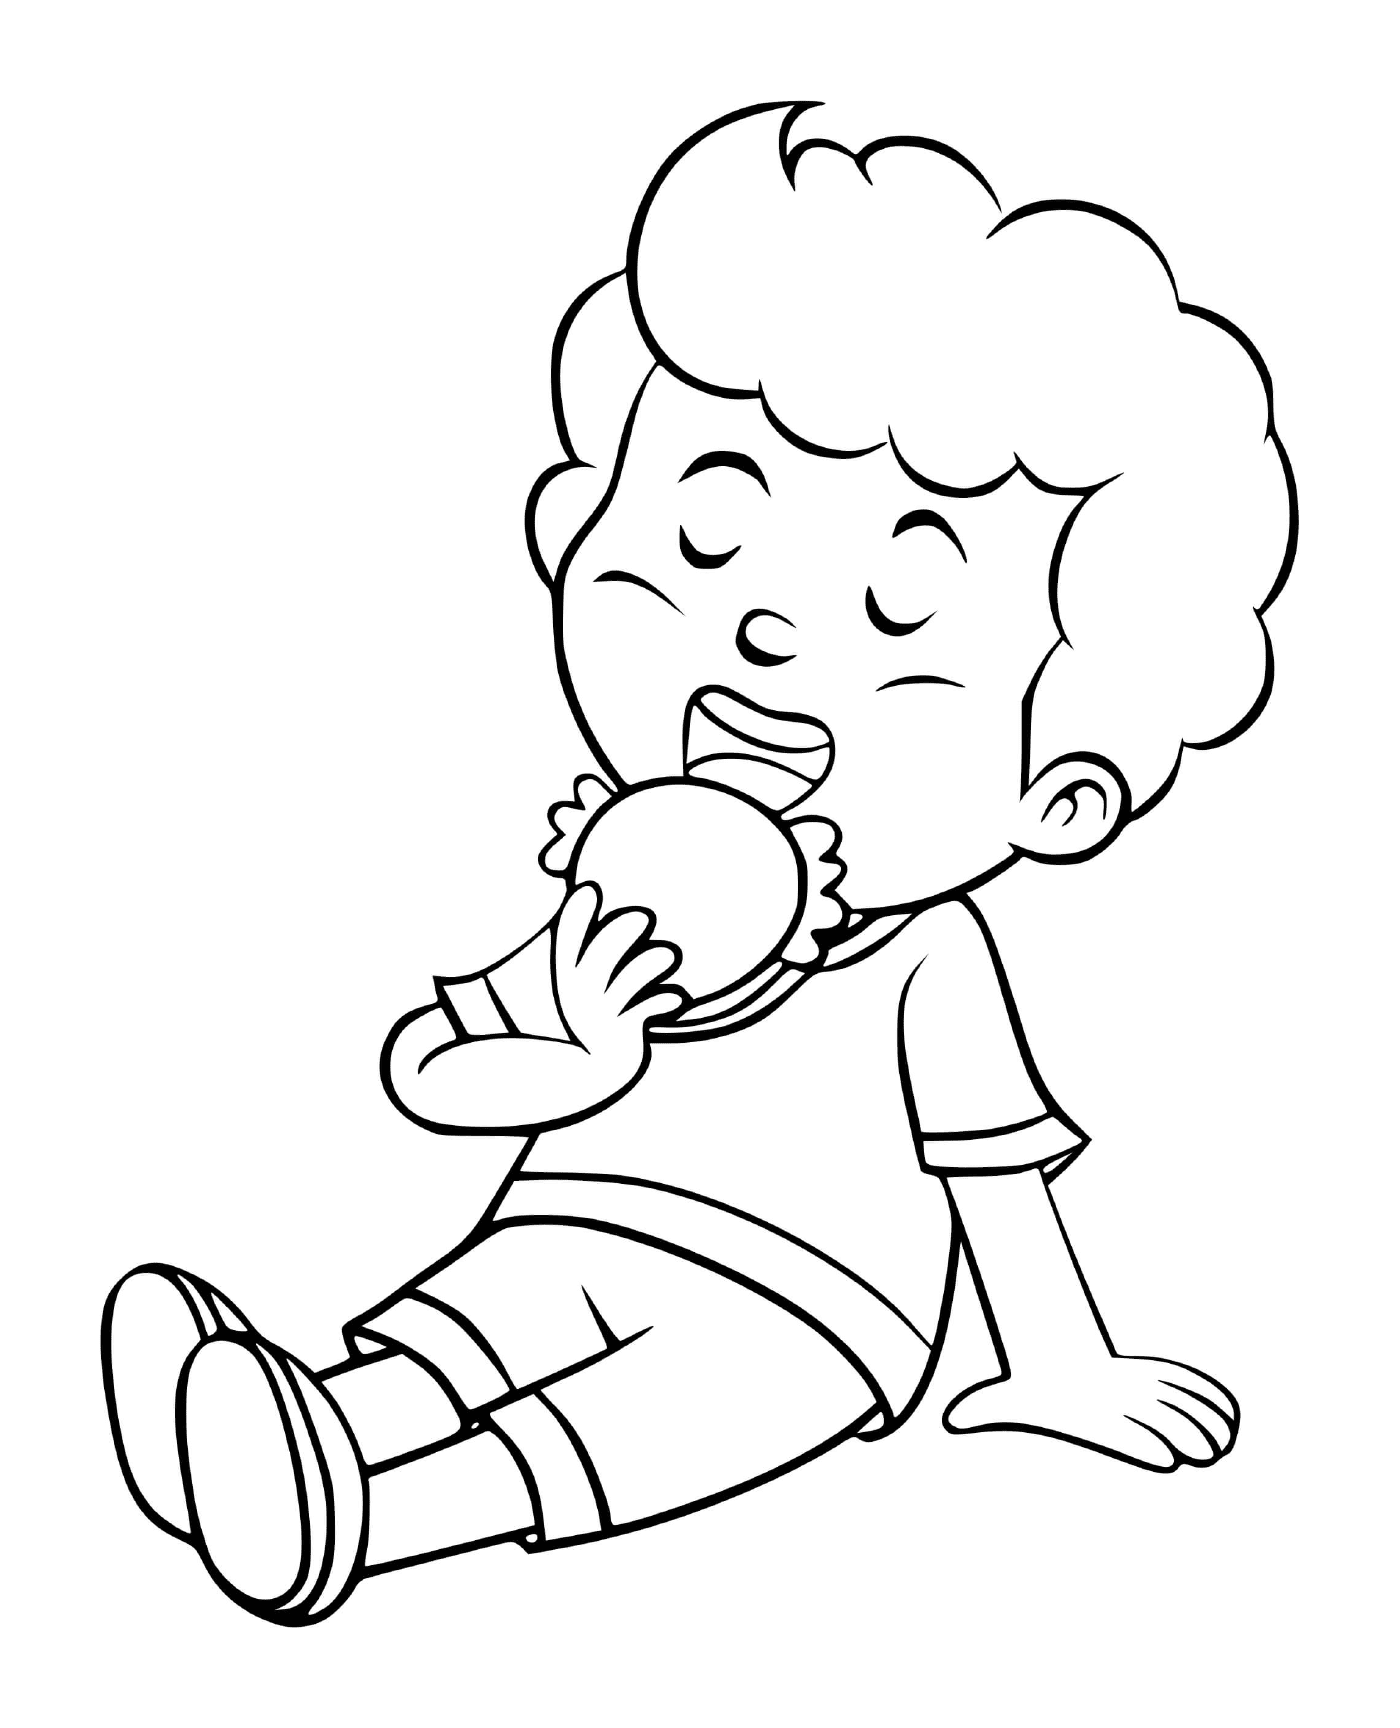  Мальчик ест свой обед с аппетитом 